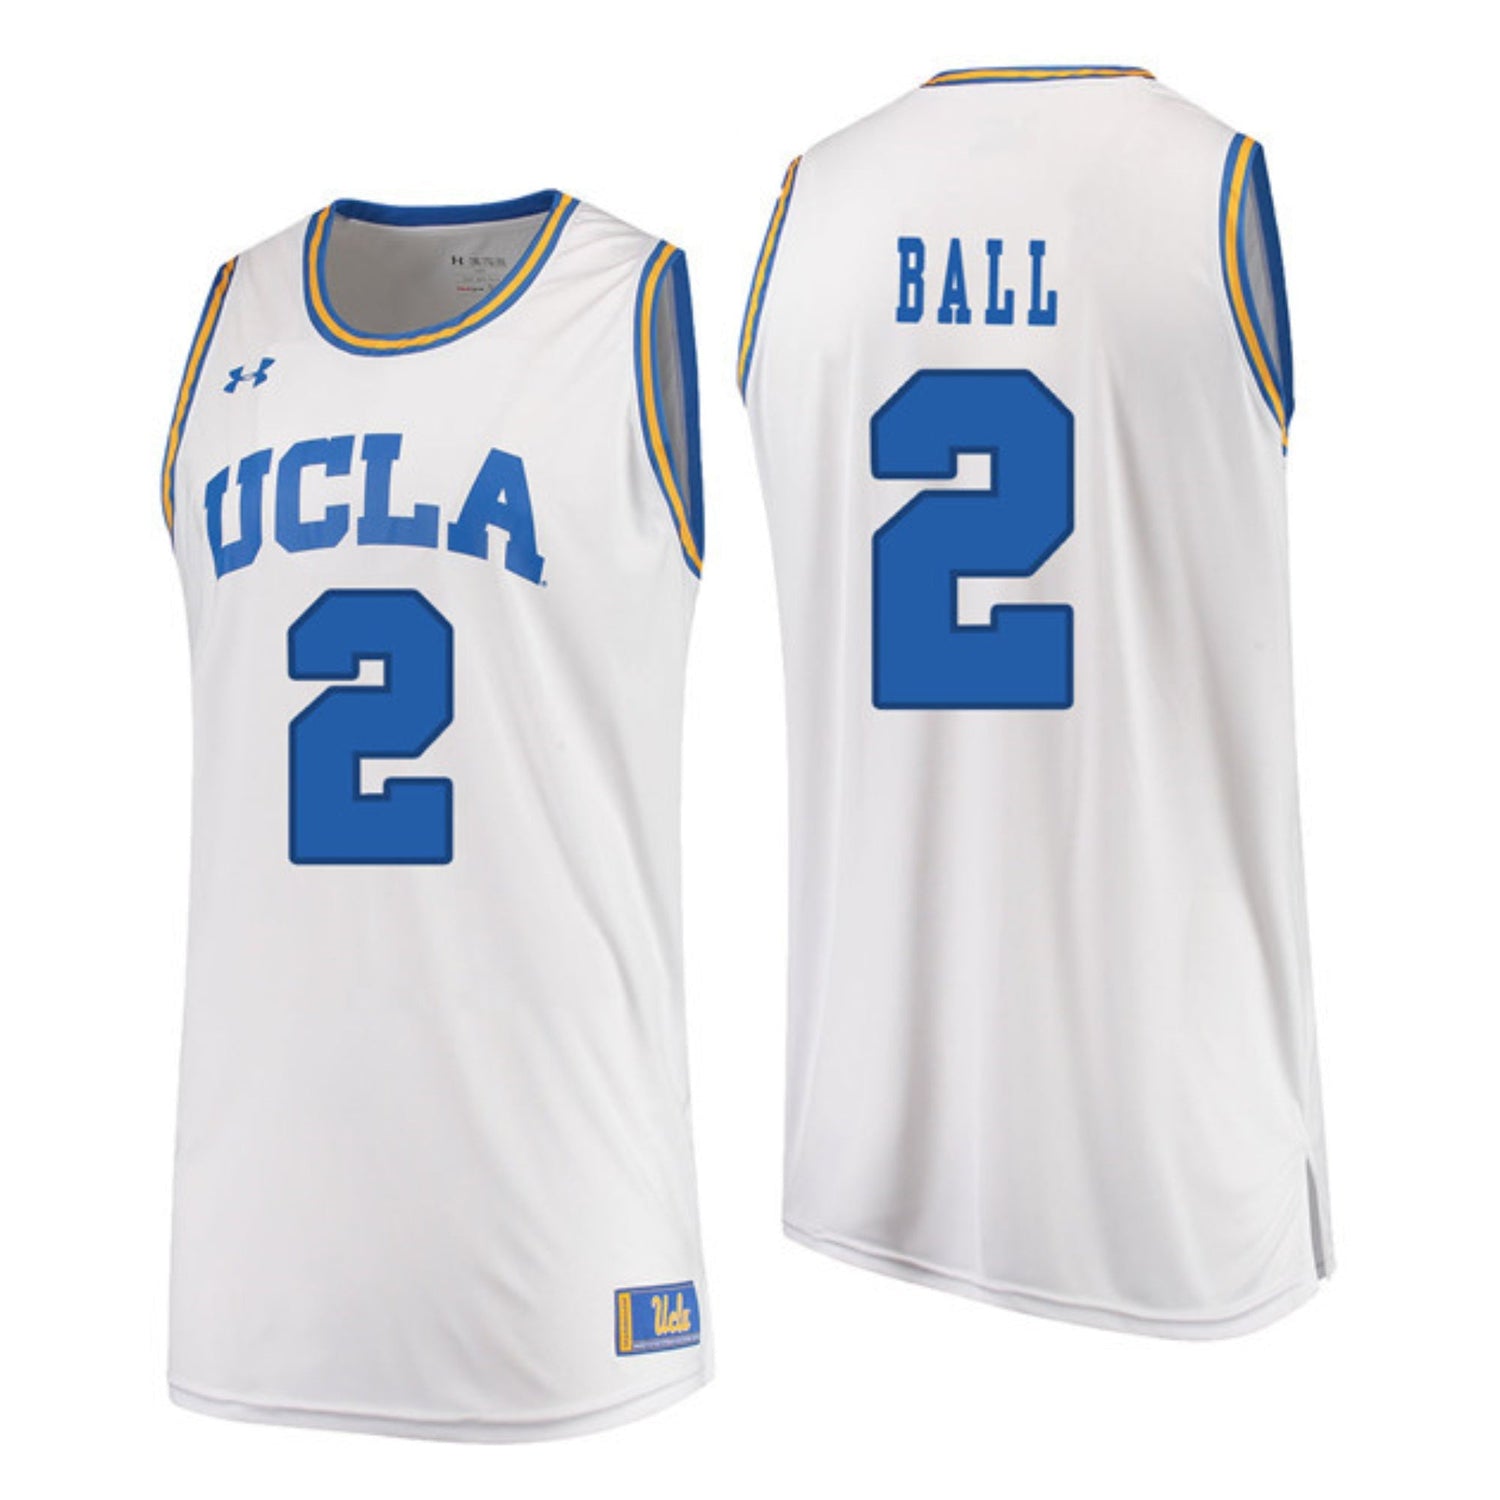 Lonzo Ball UCLA Bruins Basketball Jersey Large 